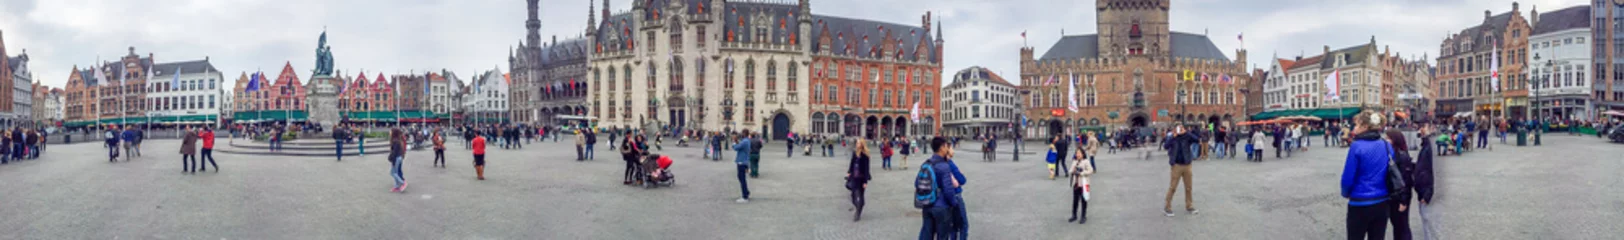 Cercles muraux Brugges BRUGES, BELGIQUE - MAI 2015 : Touristes le long des rues de la ville. La ville est une attraction célèbre en Belgique